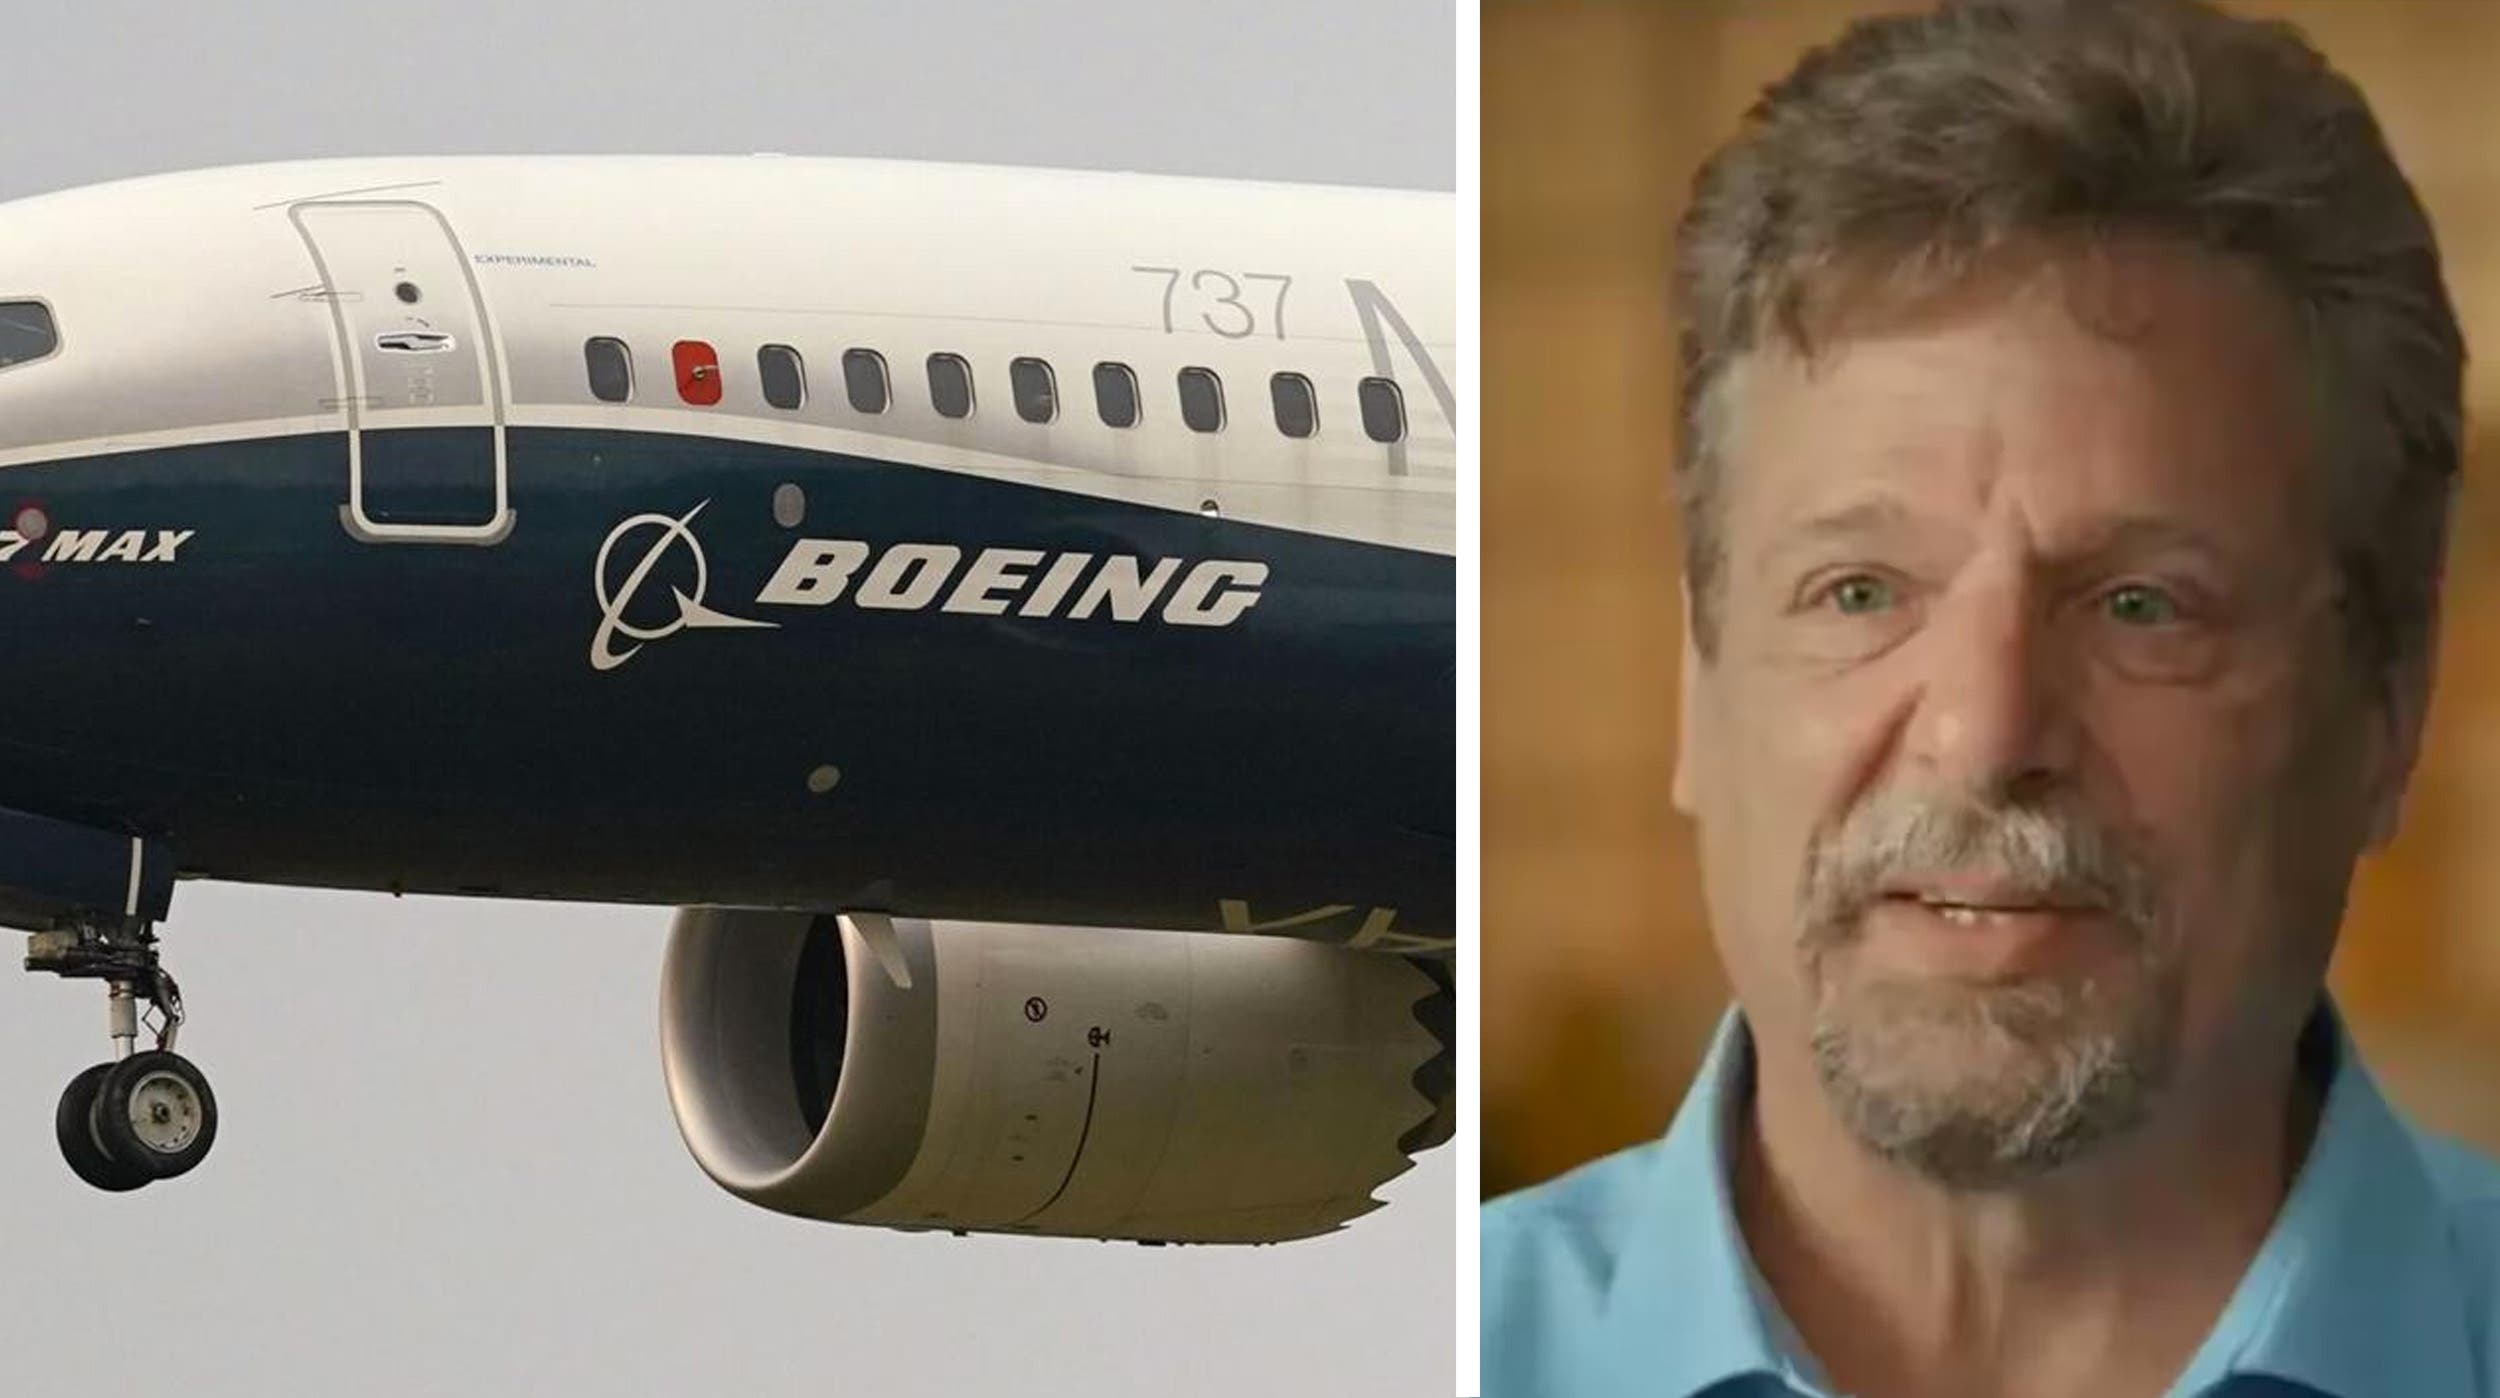 Es encontrado muerto ex empleado de Boeing, luego de dar testimonio de las fallas en aviones de la compañía 